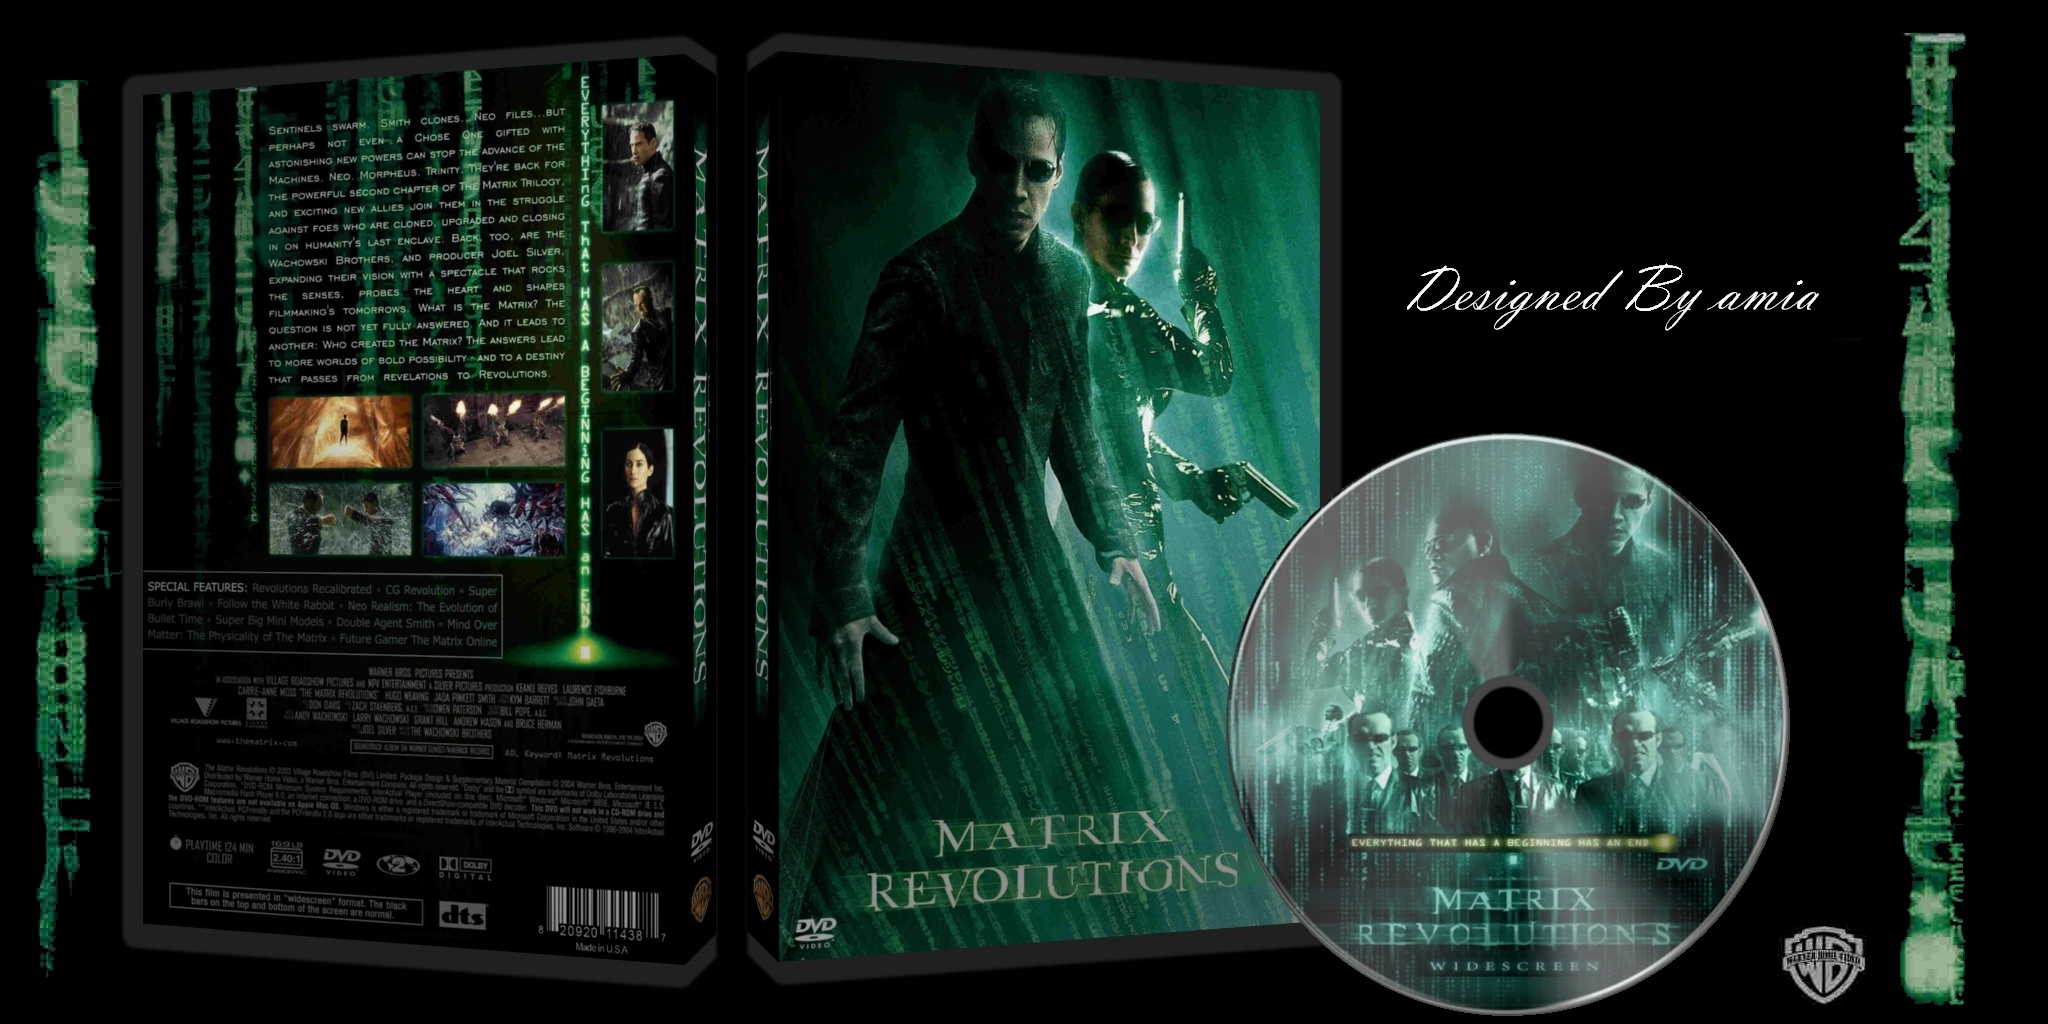 The matrix - Revolutions box cover